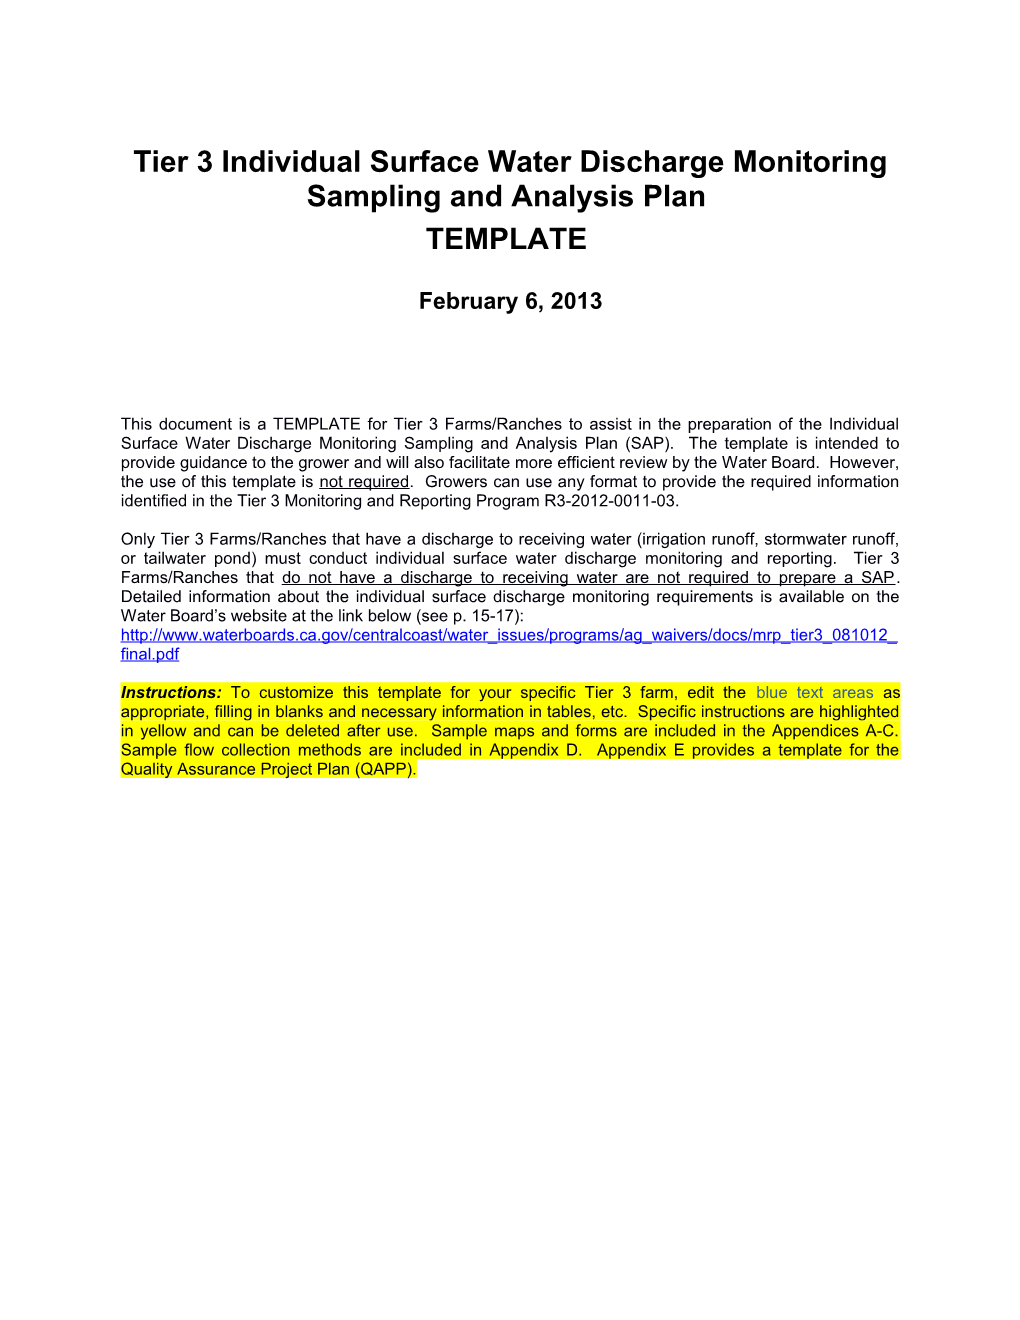 Sampling and Analysis Plan